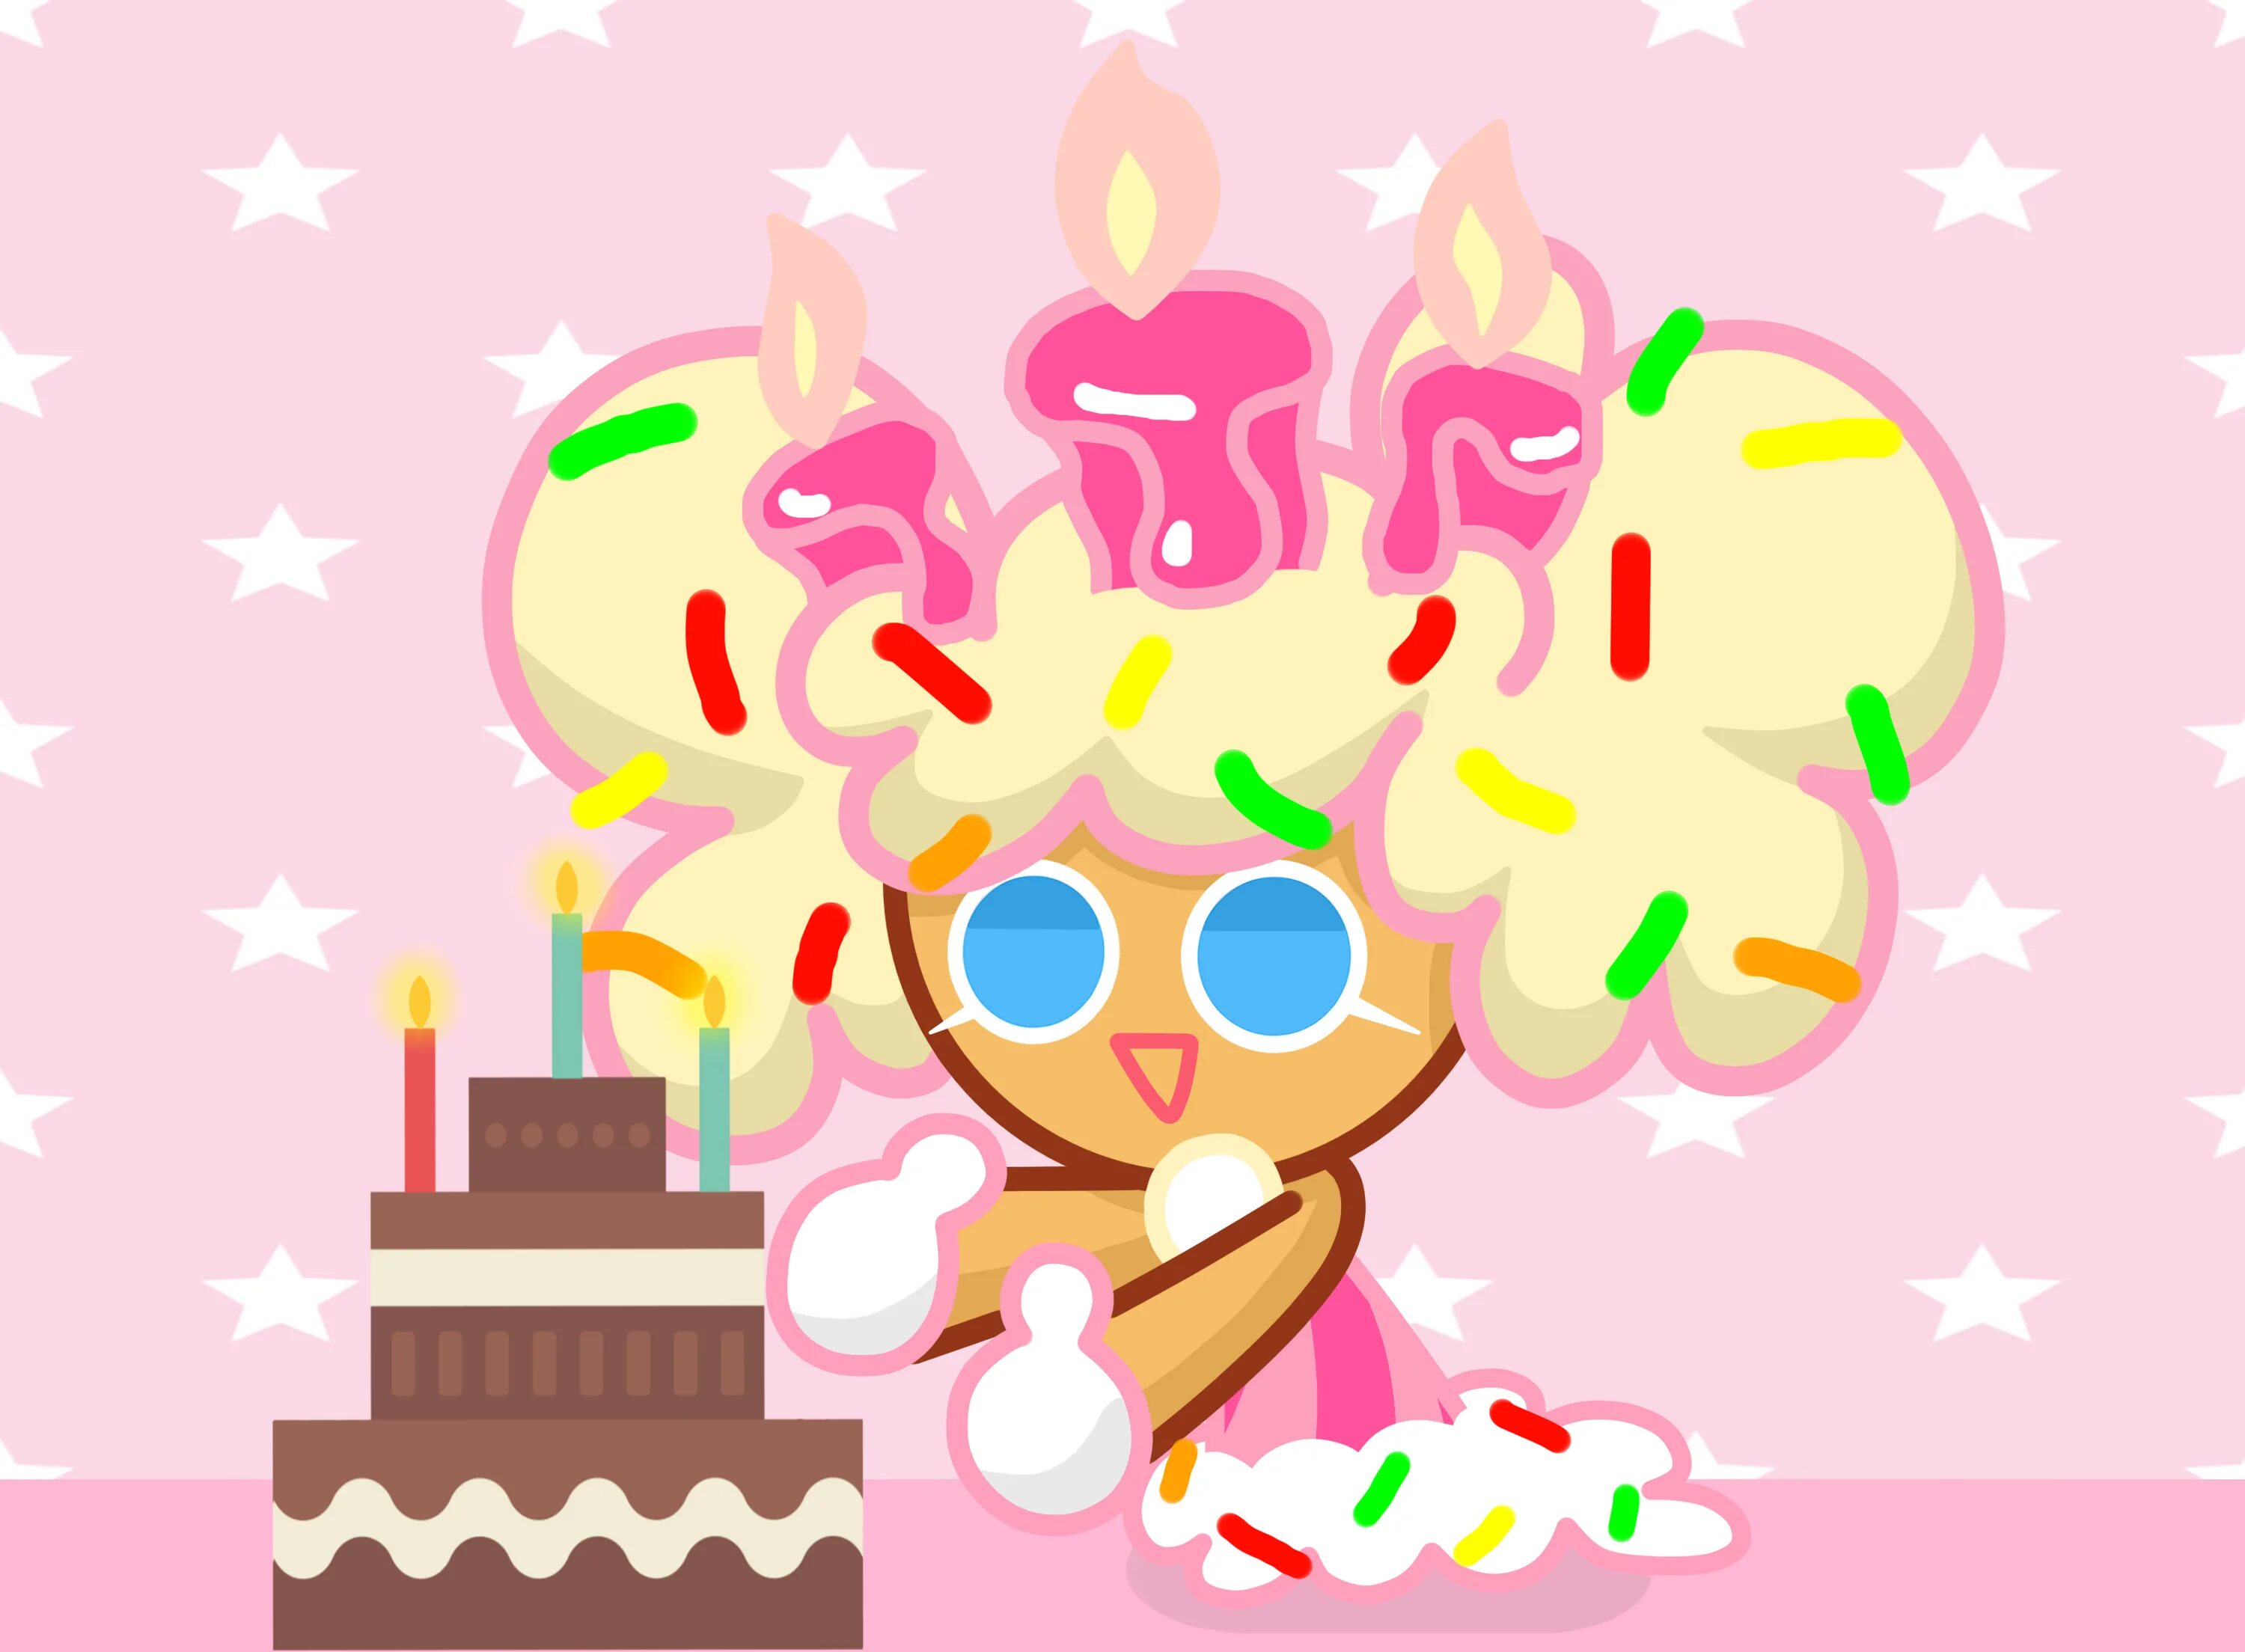 Cookie run cake. Куки РАН тортик. Куки РАН бездей кейк. Cookie Run Birthday Cake cookie. Cookie Run Happy Birthday.